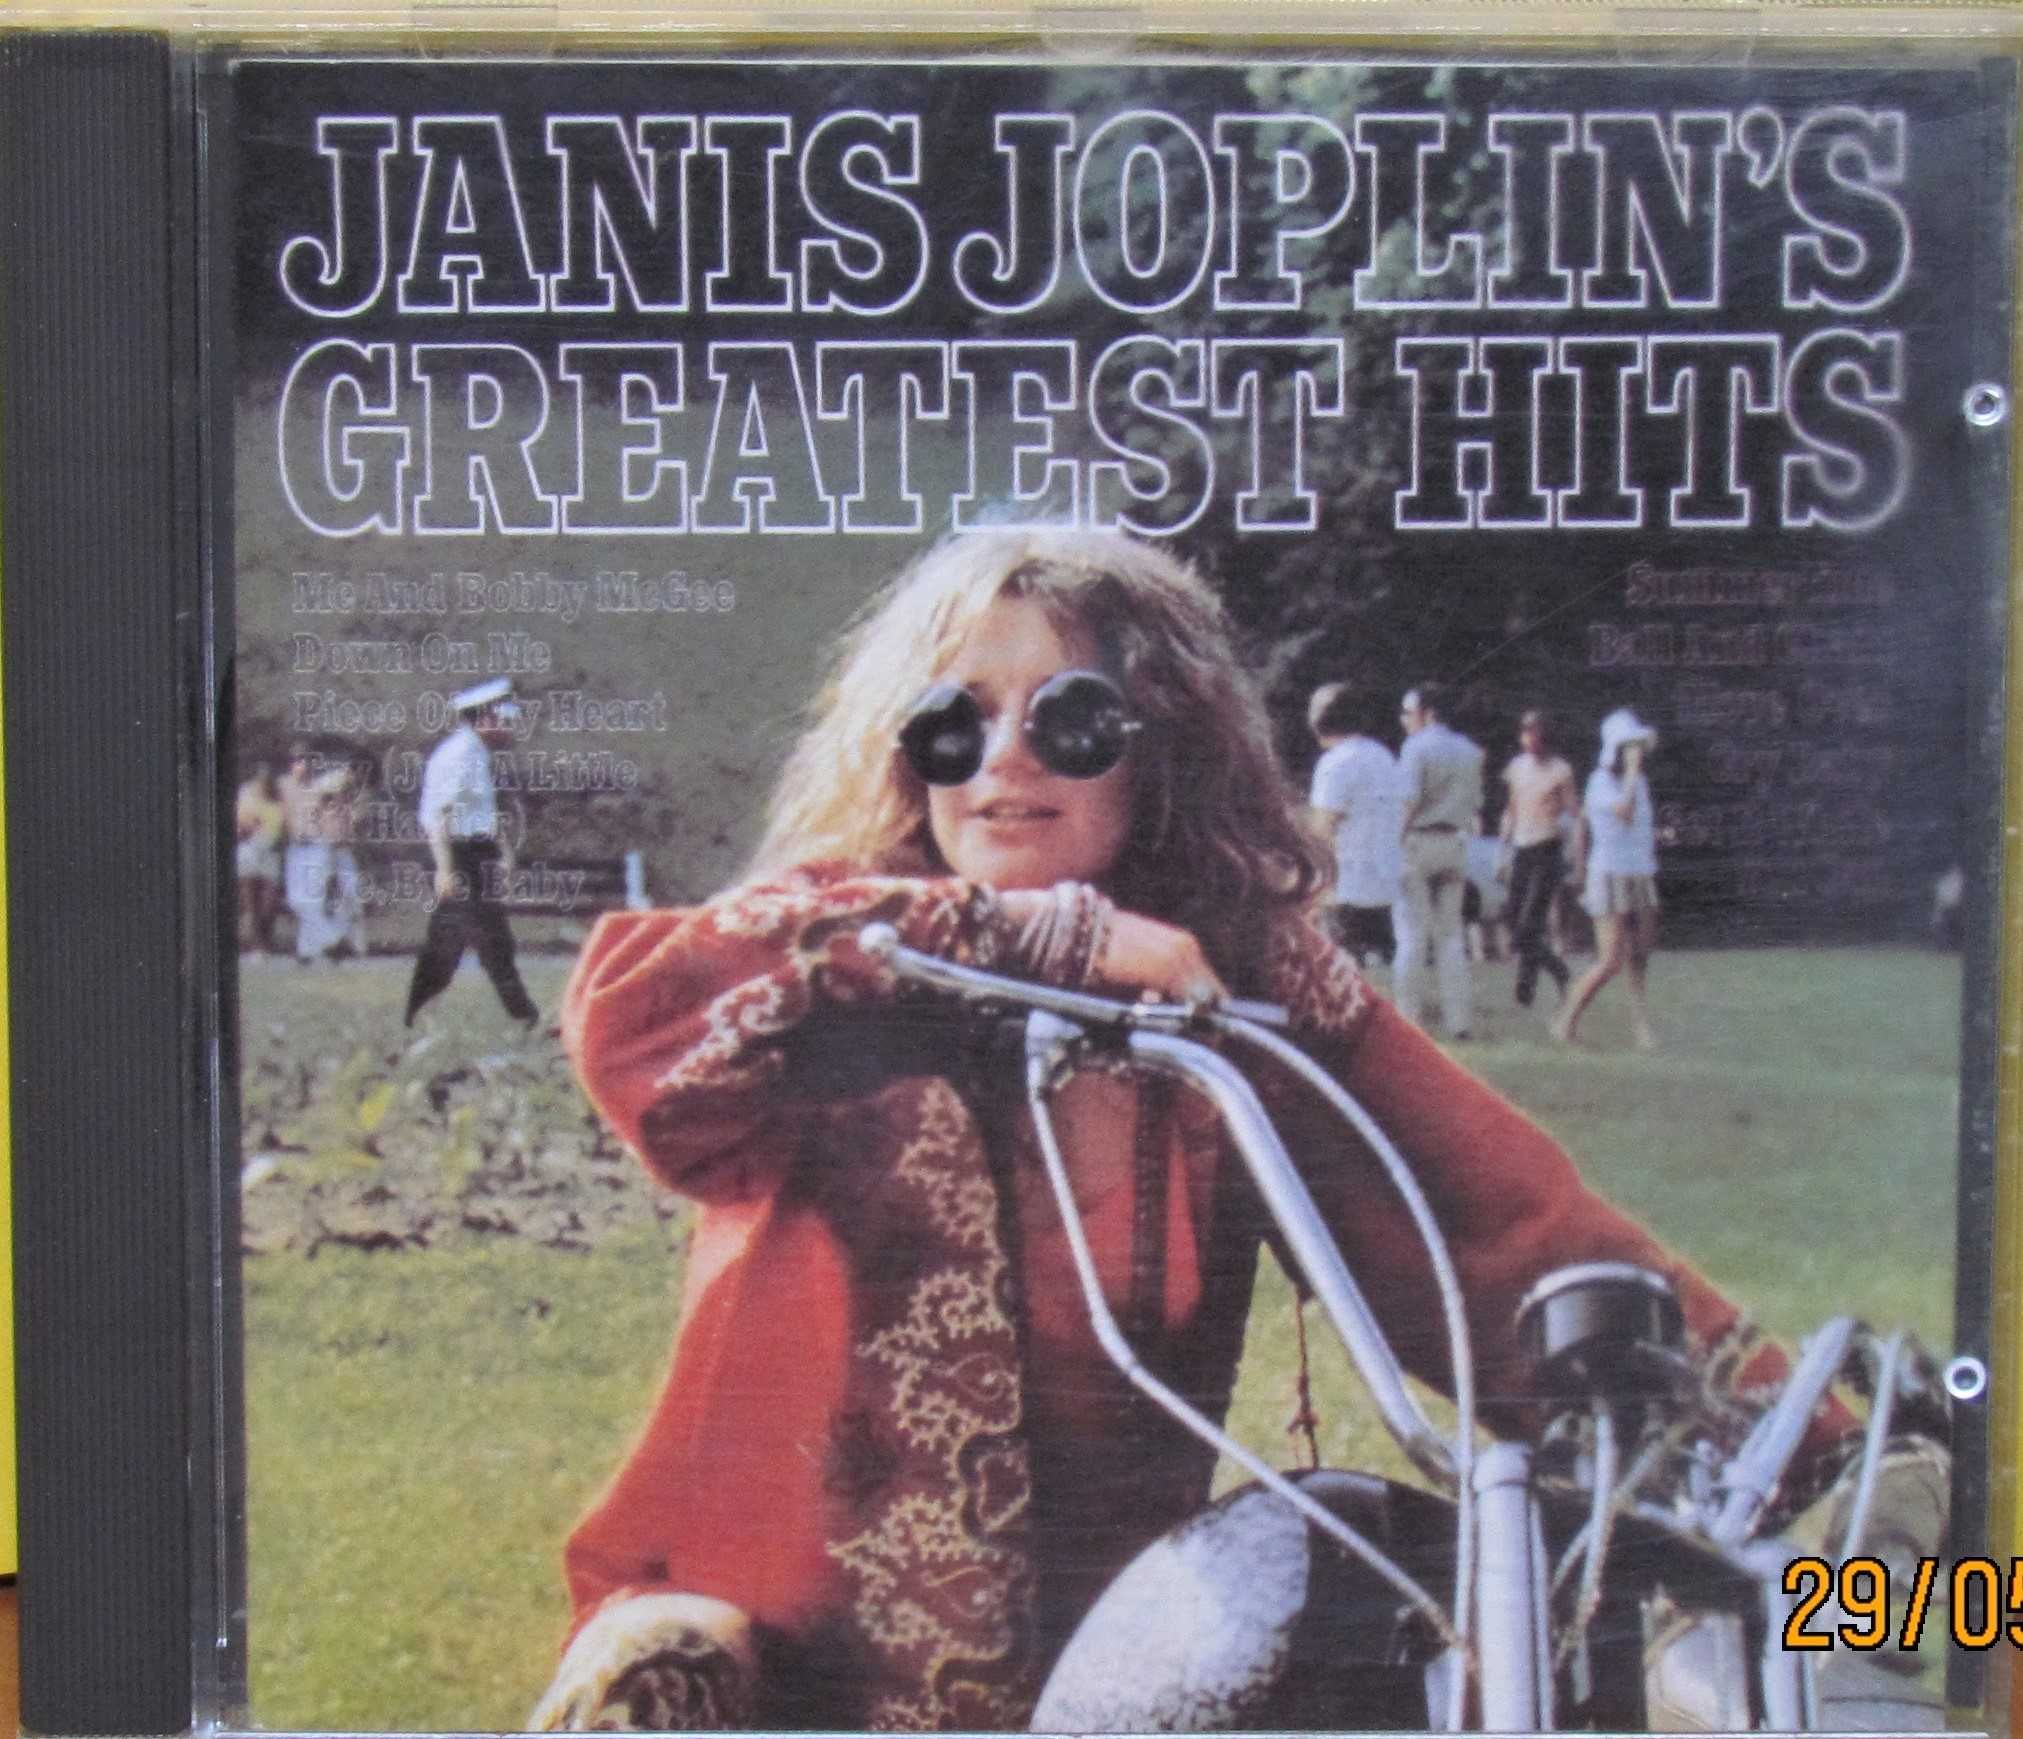 Janis Joplin – Janis Joplin's Greatest Hits;  1 wydanie na CD, 1985 r.